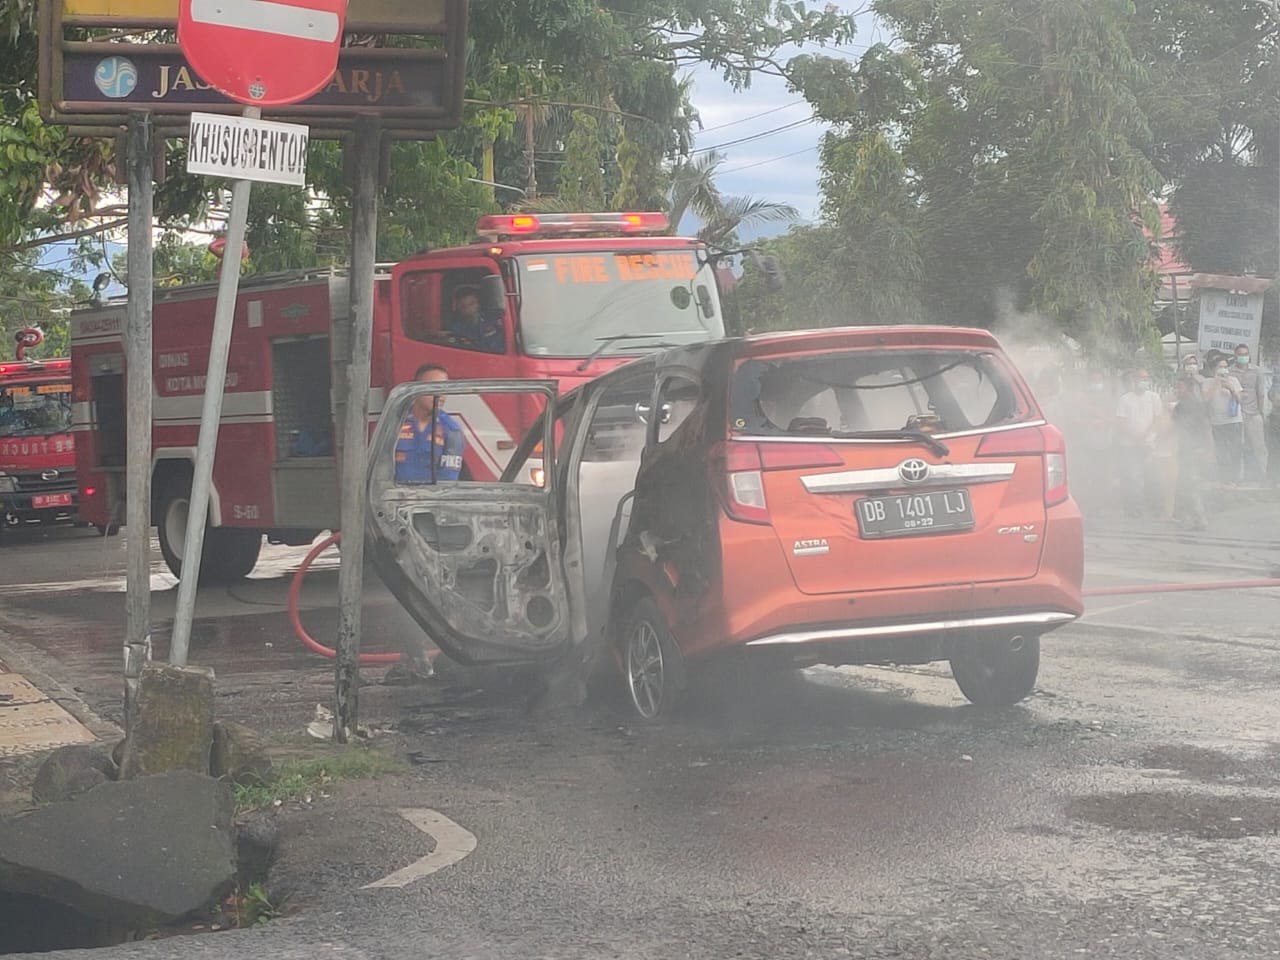 Mobil toyota calya bernomor polisi DB 1401 LJ, milik seorang perempuan, sekira pukul 16.40 WITA, Selasa (29/12), terbakar di depan kantor Satlantas Polres Kotamobagu.